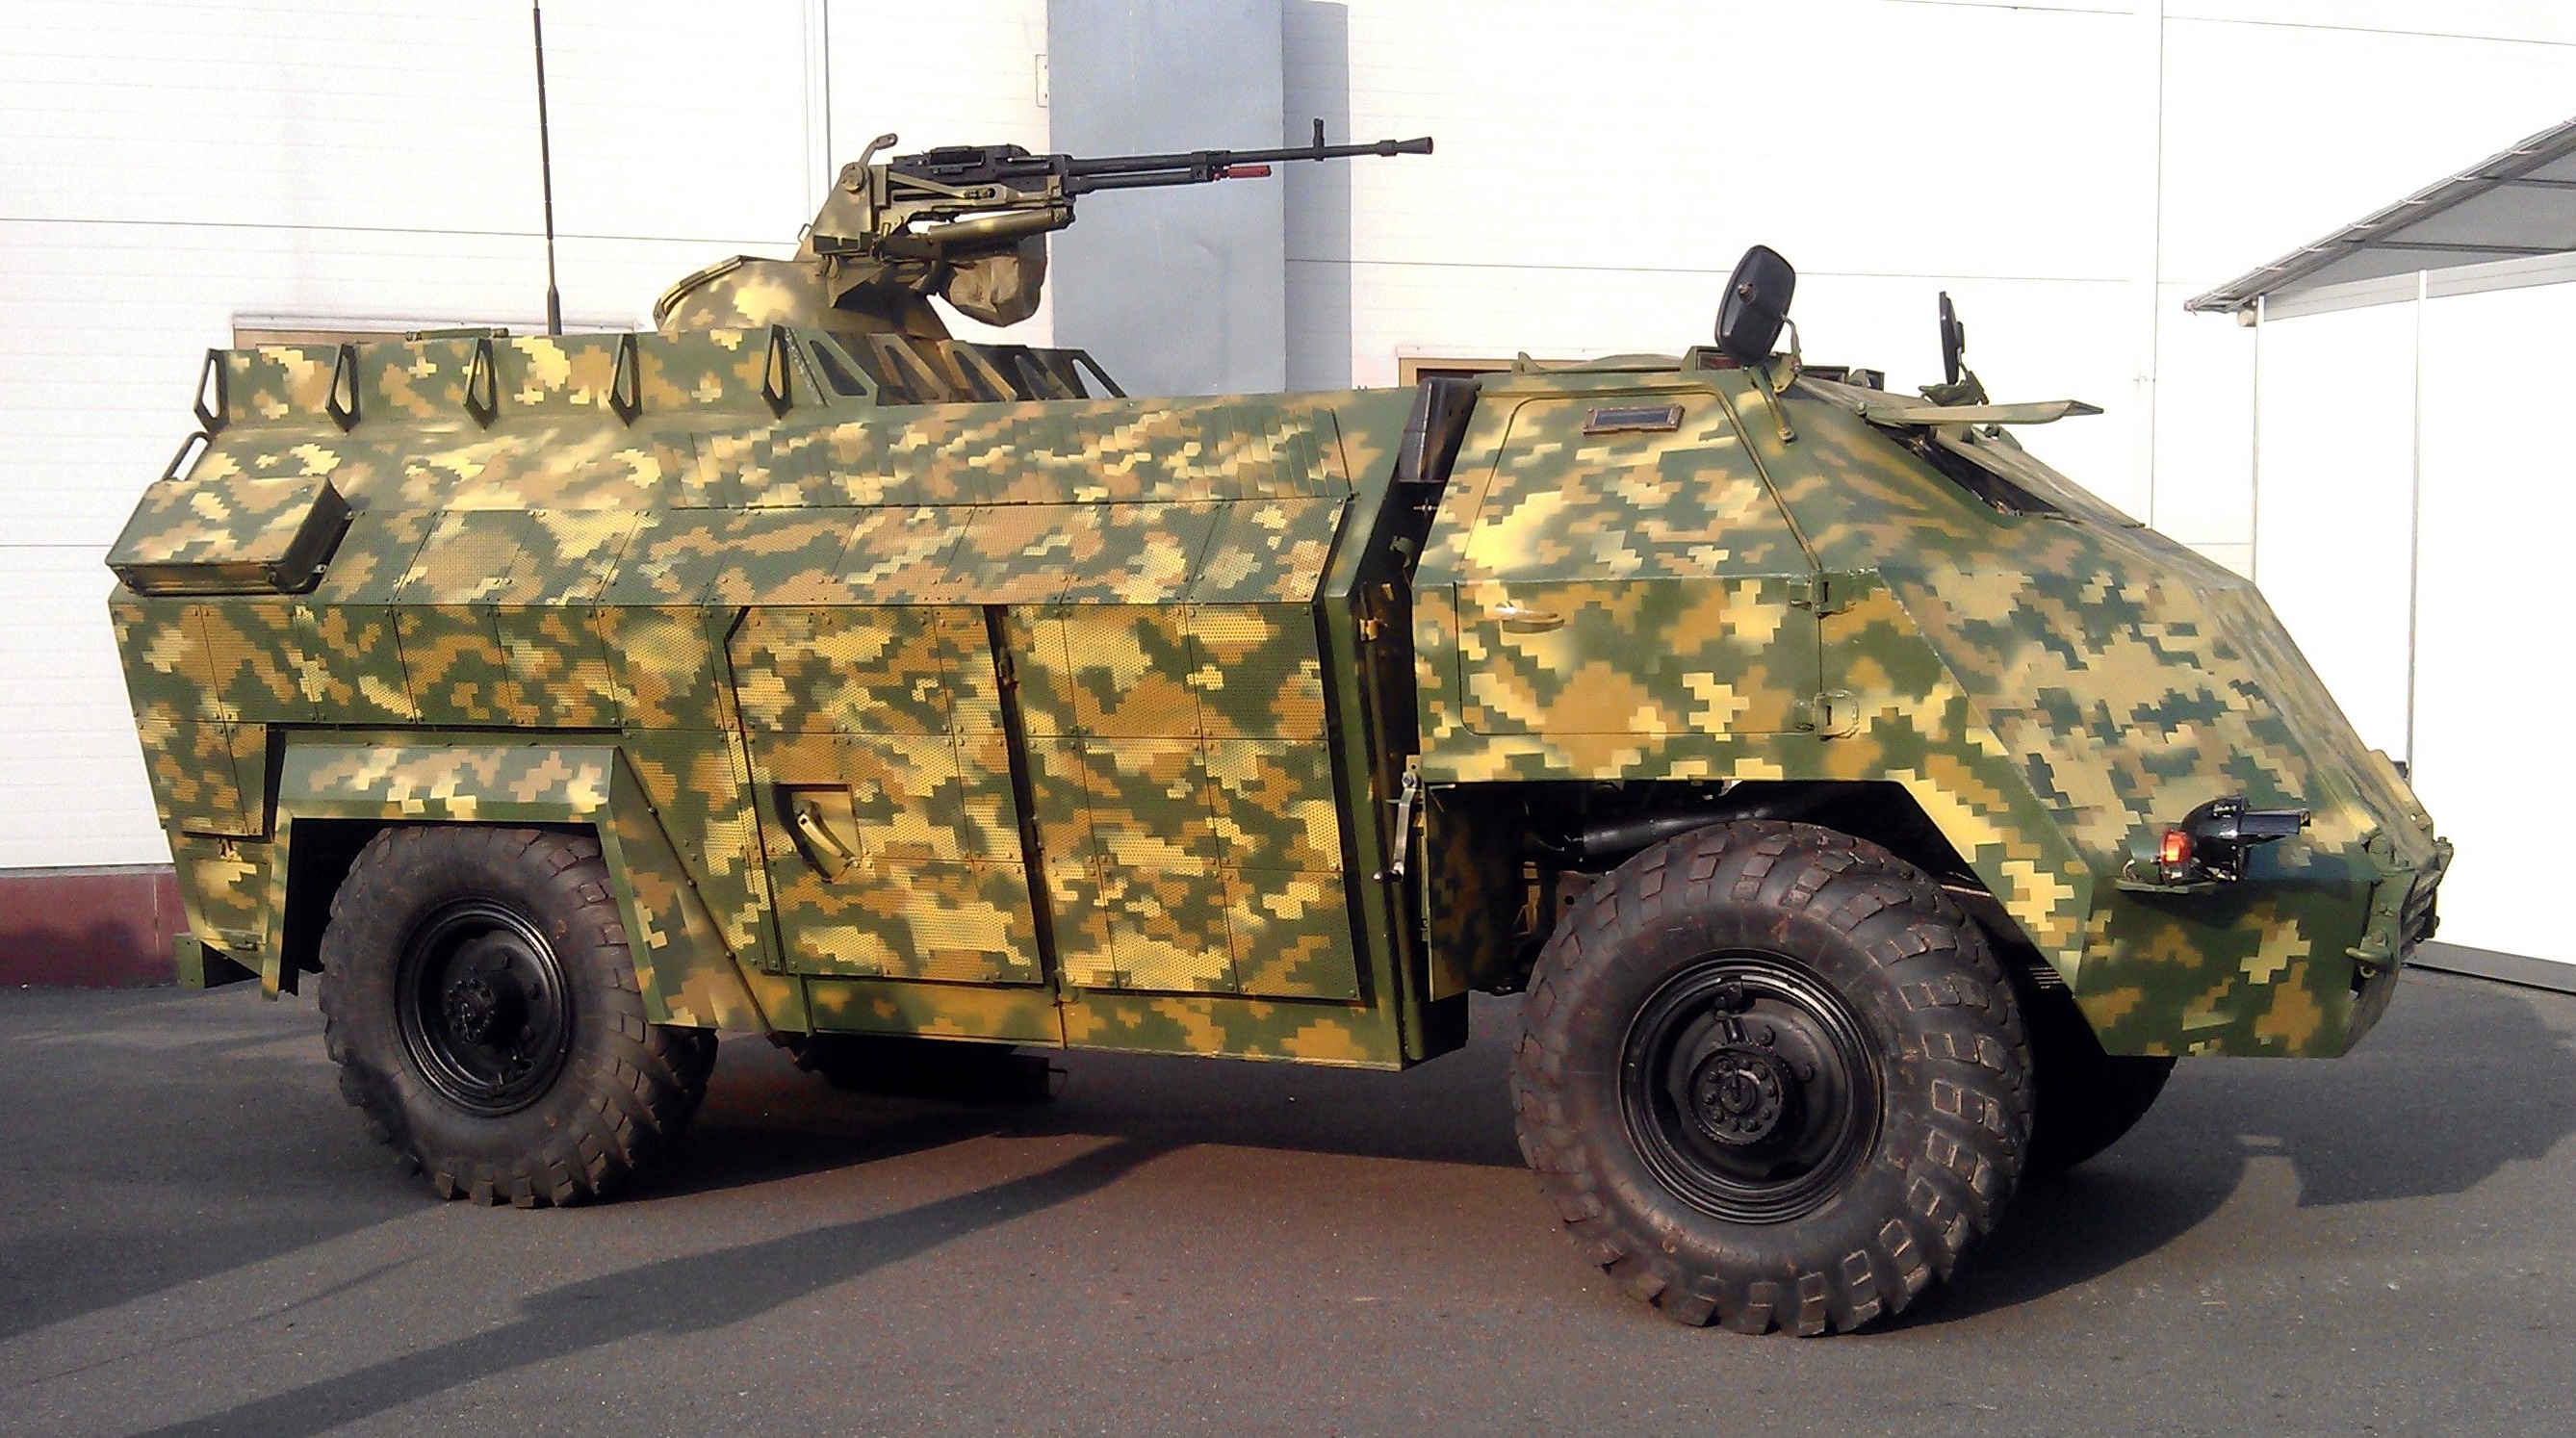 Le forze armate ucraine hanno mostrato un'"arma segreta" nella guerra contro la Russia: un veicolo corazzato ucraino unico "Gadfly", disponibile in un'unica copia